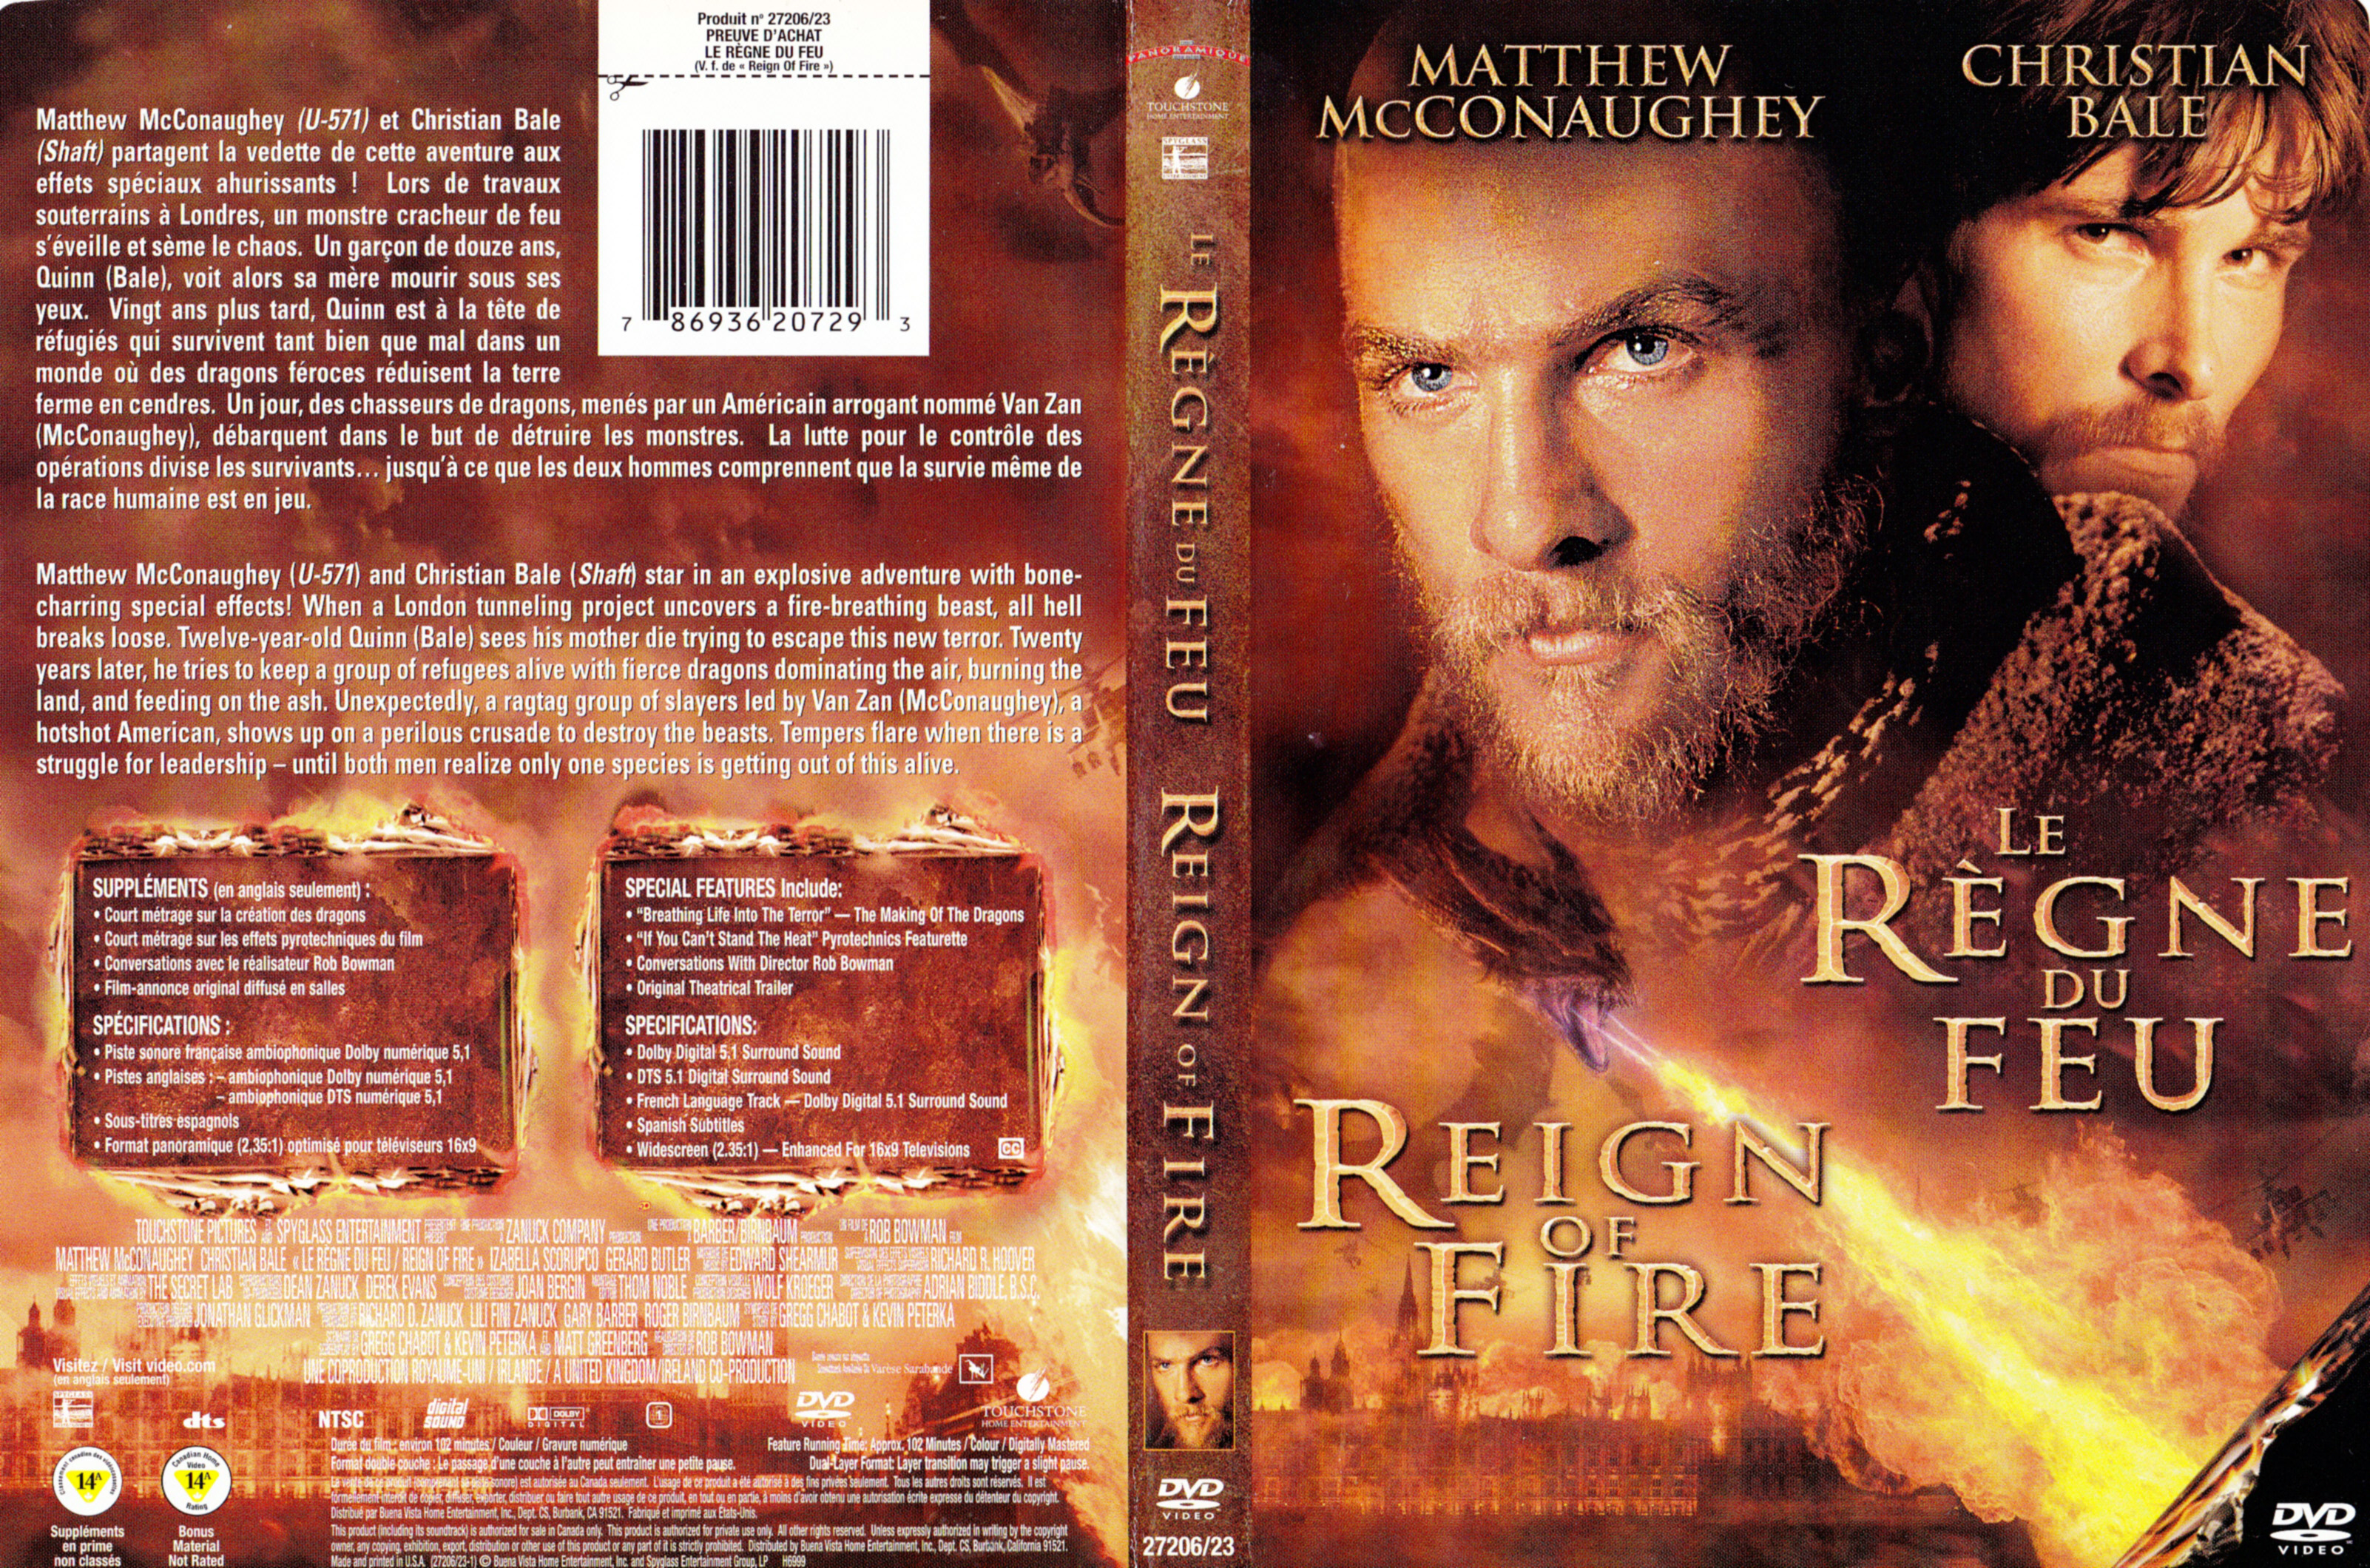 Jaquette DVD Le rgne du feu - Reign of fire (Canadienne)